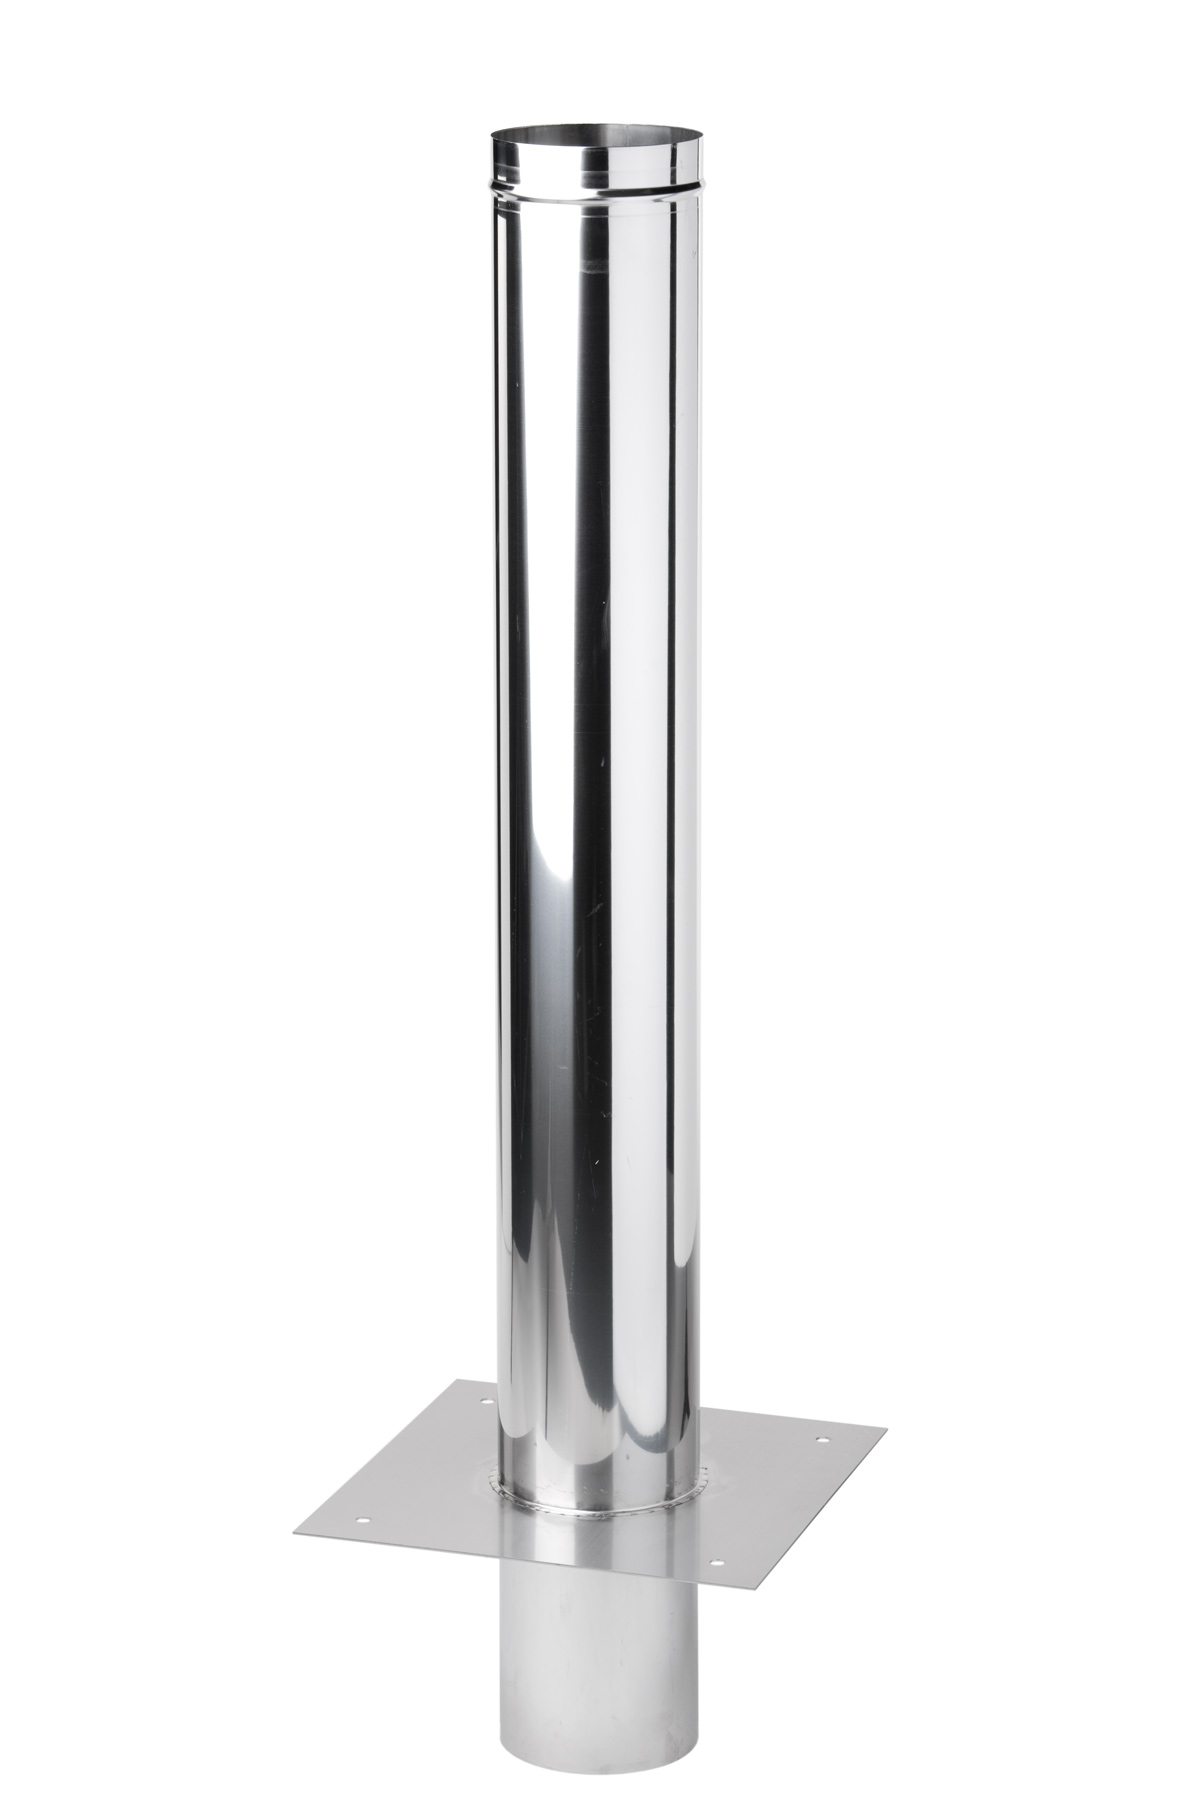 Schornsteinverlängerung 0,3 m einwandig Edelstahl - konfigurierbar